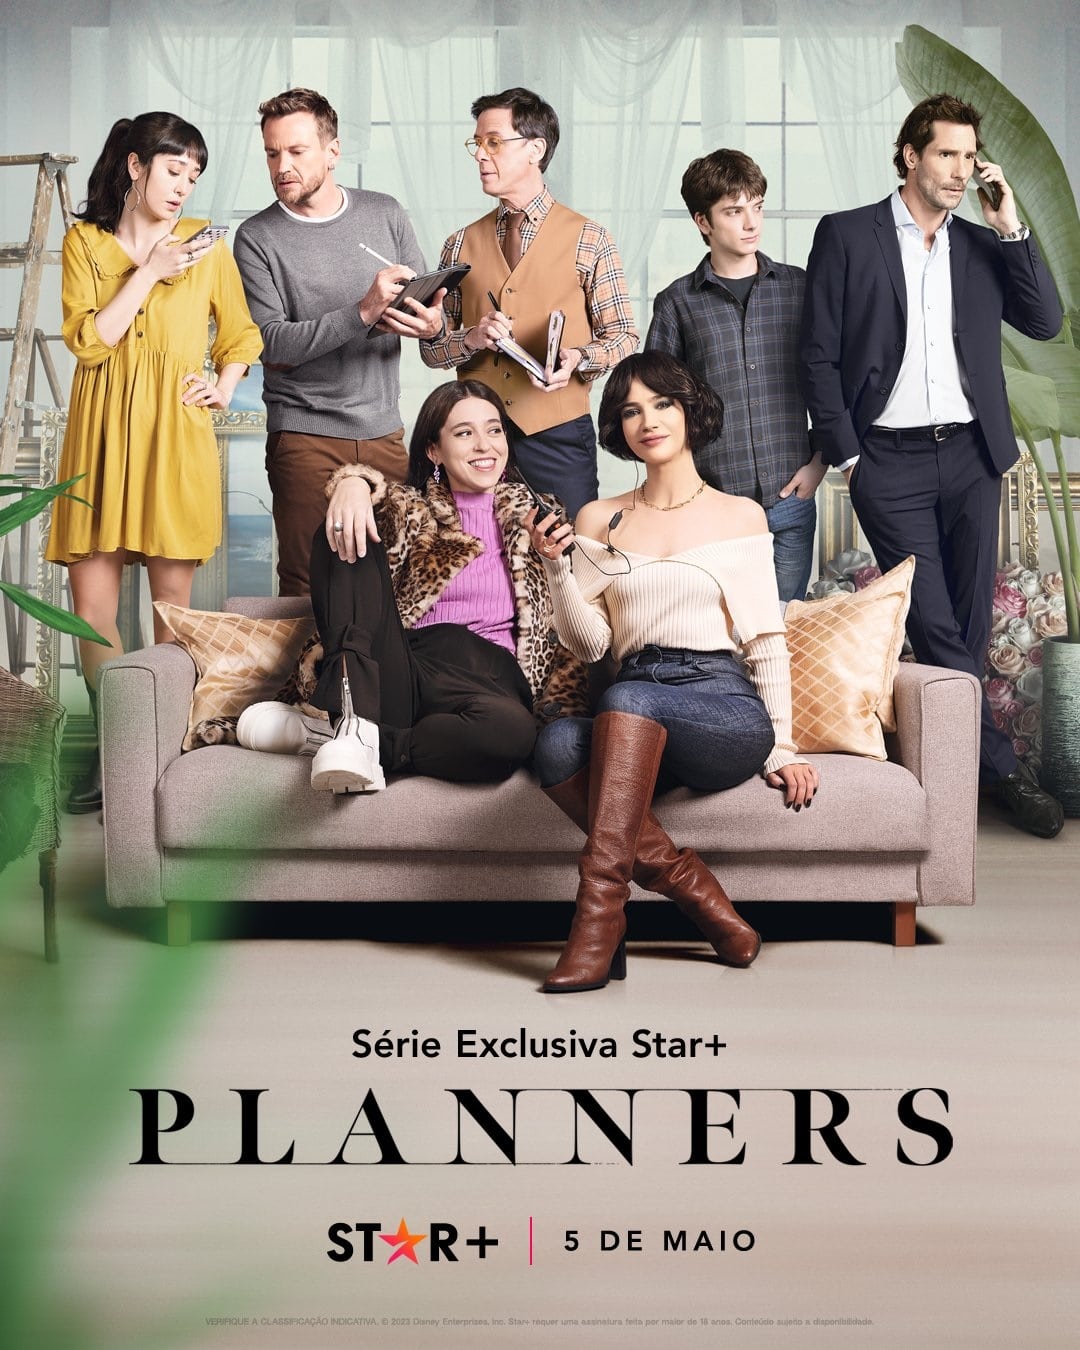 Planners-Star-Plus-Poster Planners: conheça o novo drama cômico que estreia em maio no Star+